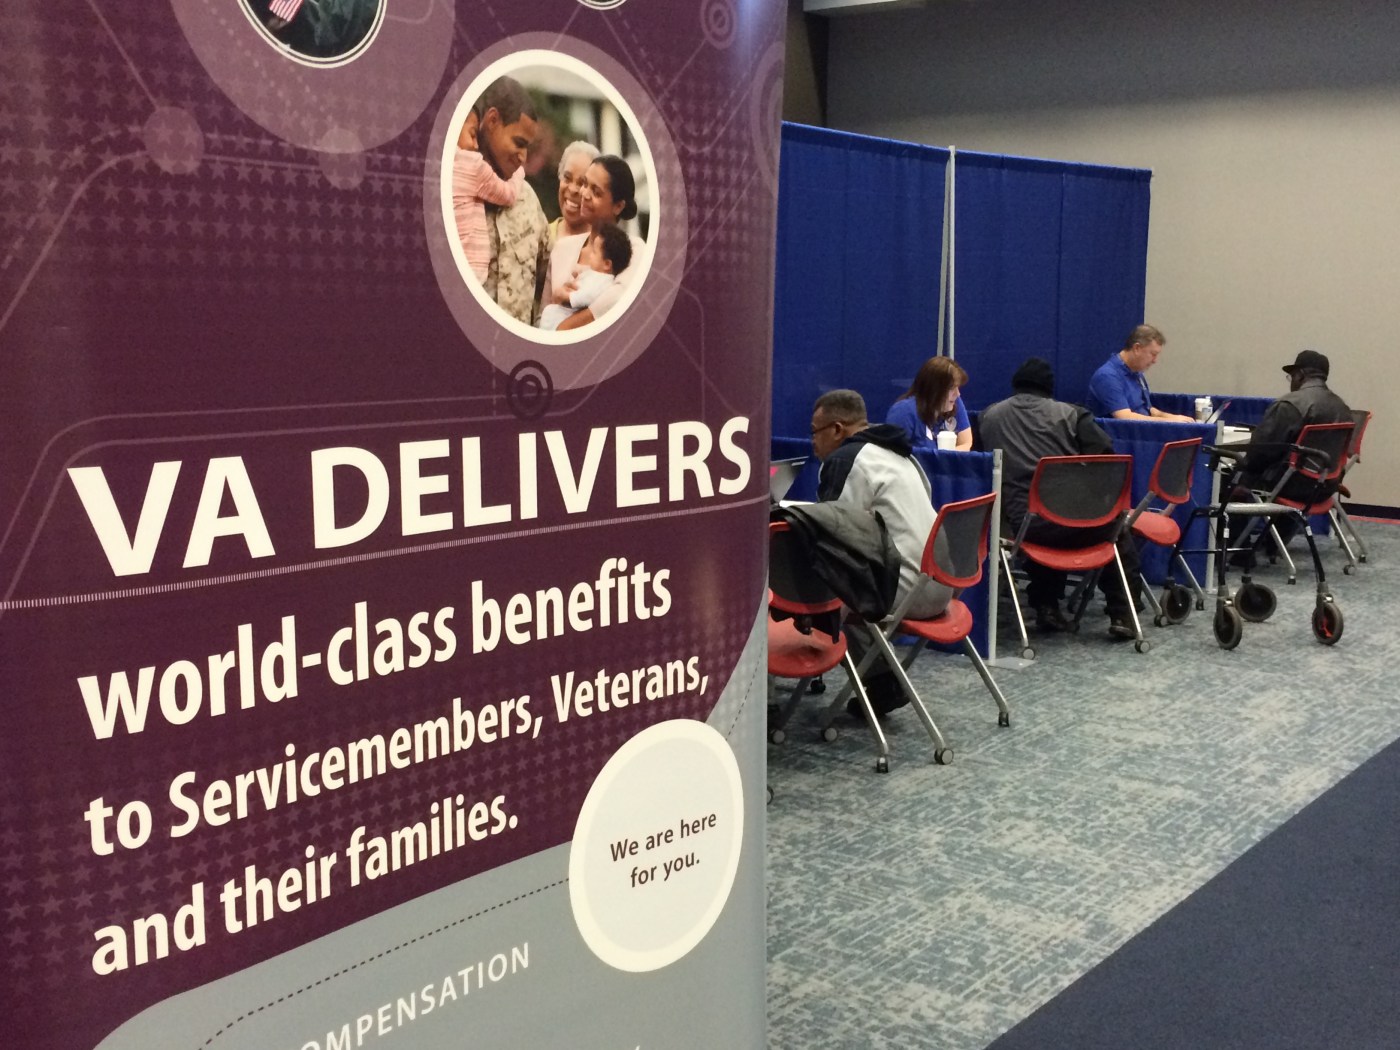 VA Delivers world-class benefits